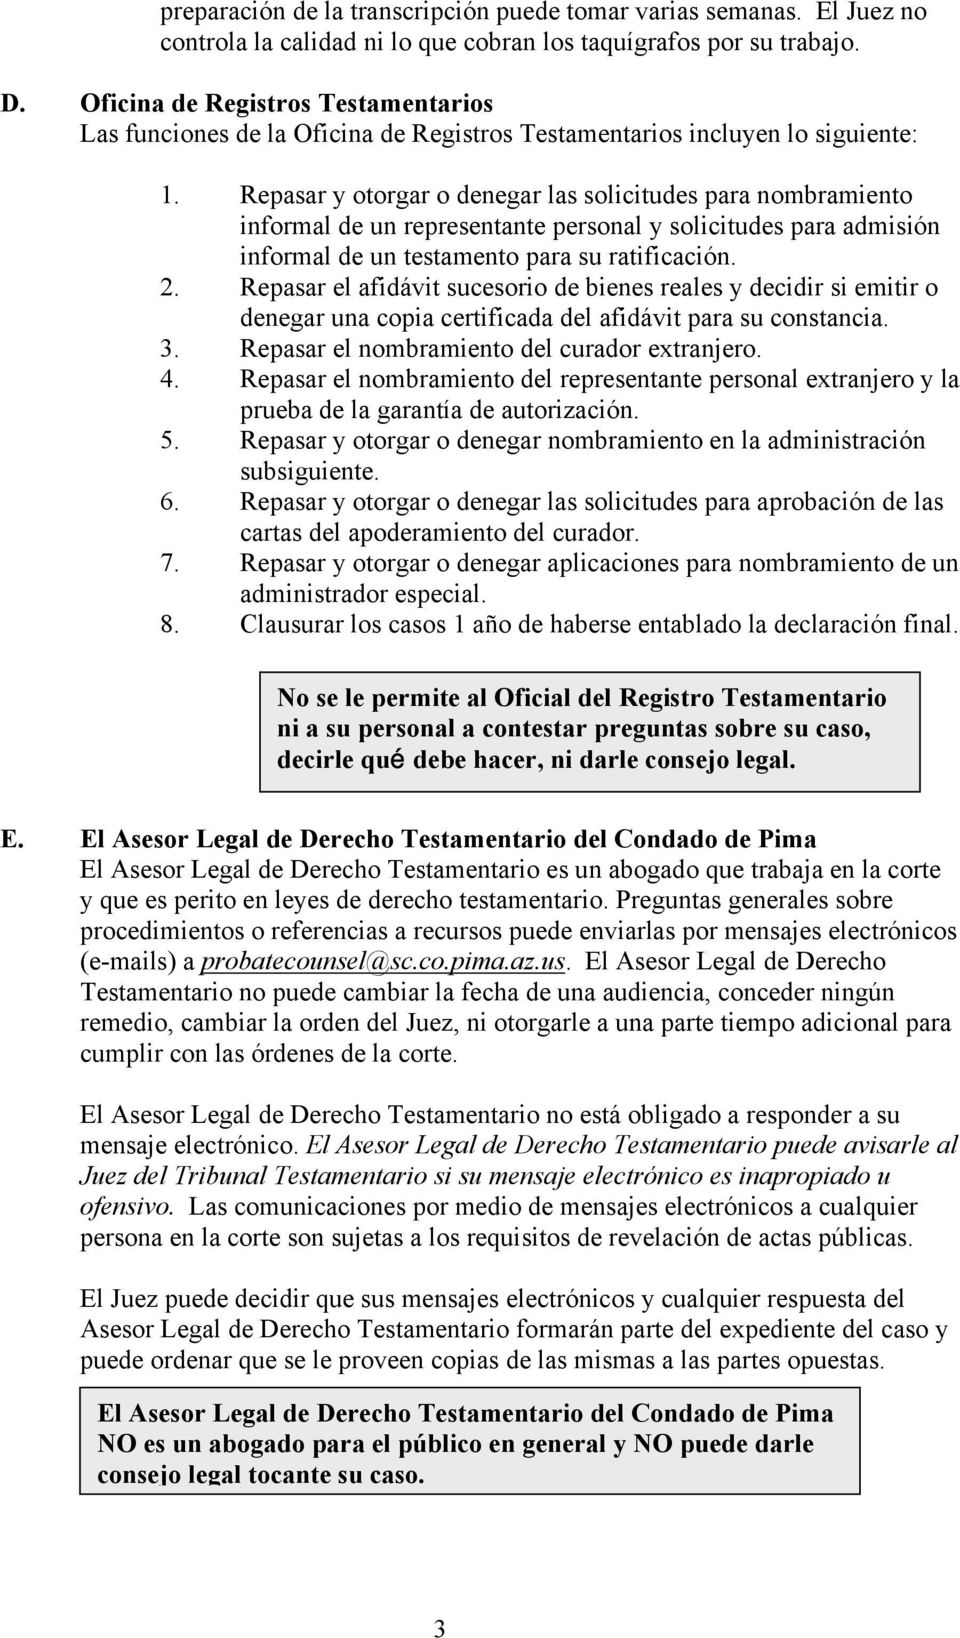 Repasar y otorgar o denegar las solicitudes para nombramiento informal de un representante personal y solicitudes para admisión informal de un testamento para su ratificación. 2.